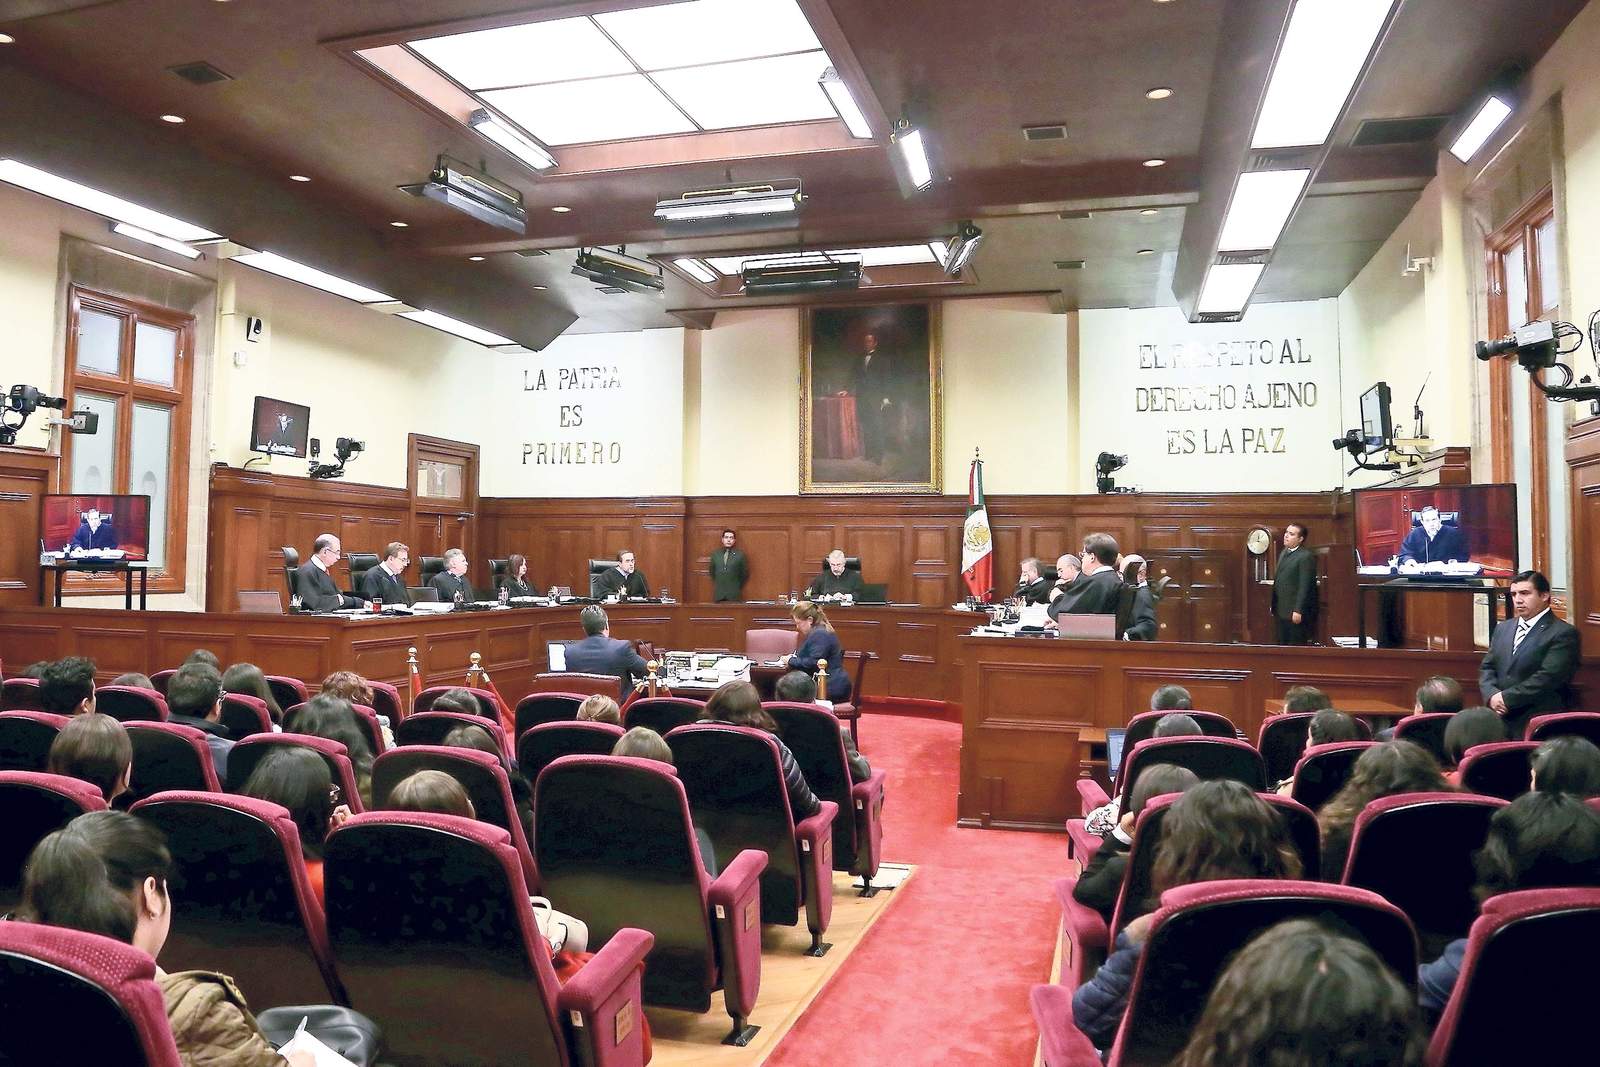 El ministro Alberto Pérez Dayán admitió a trámite la acción de inconstitucionalidad tramitada por una minoría en el Senado y afirmó que la medida de suspensión no impide a los diputados incrementar o reducir los sueldos como así lo consideren. (ARCHIVO)